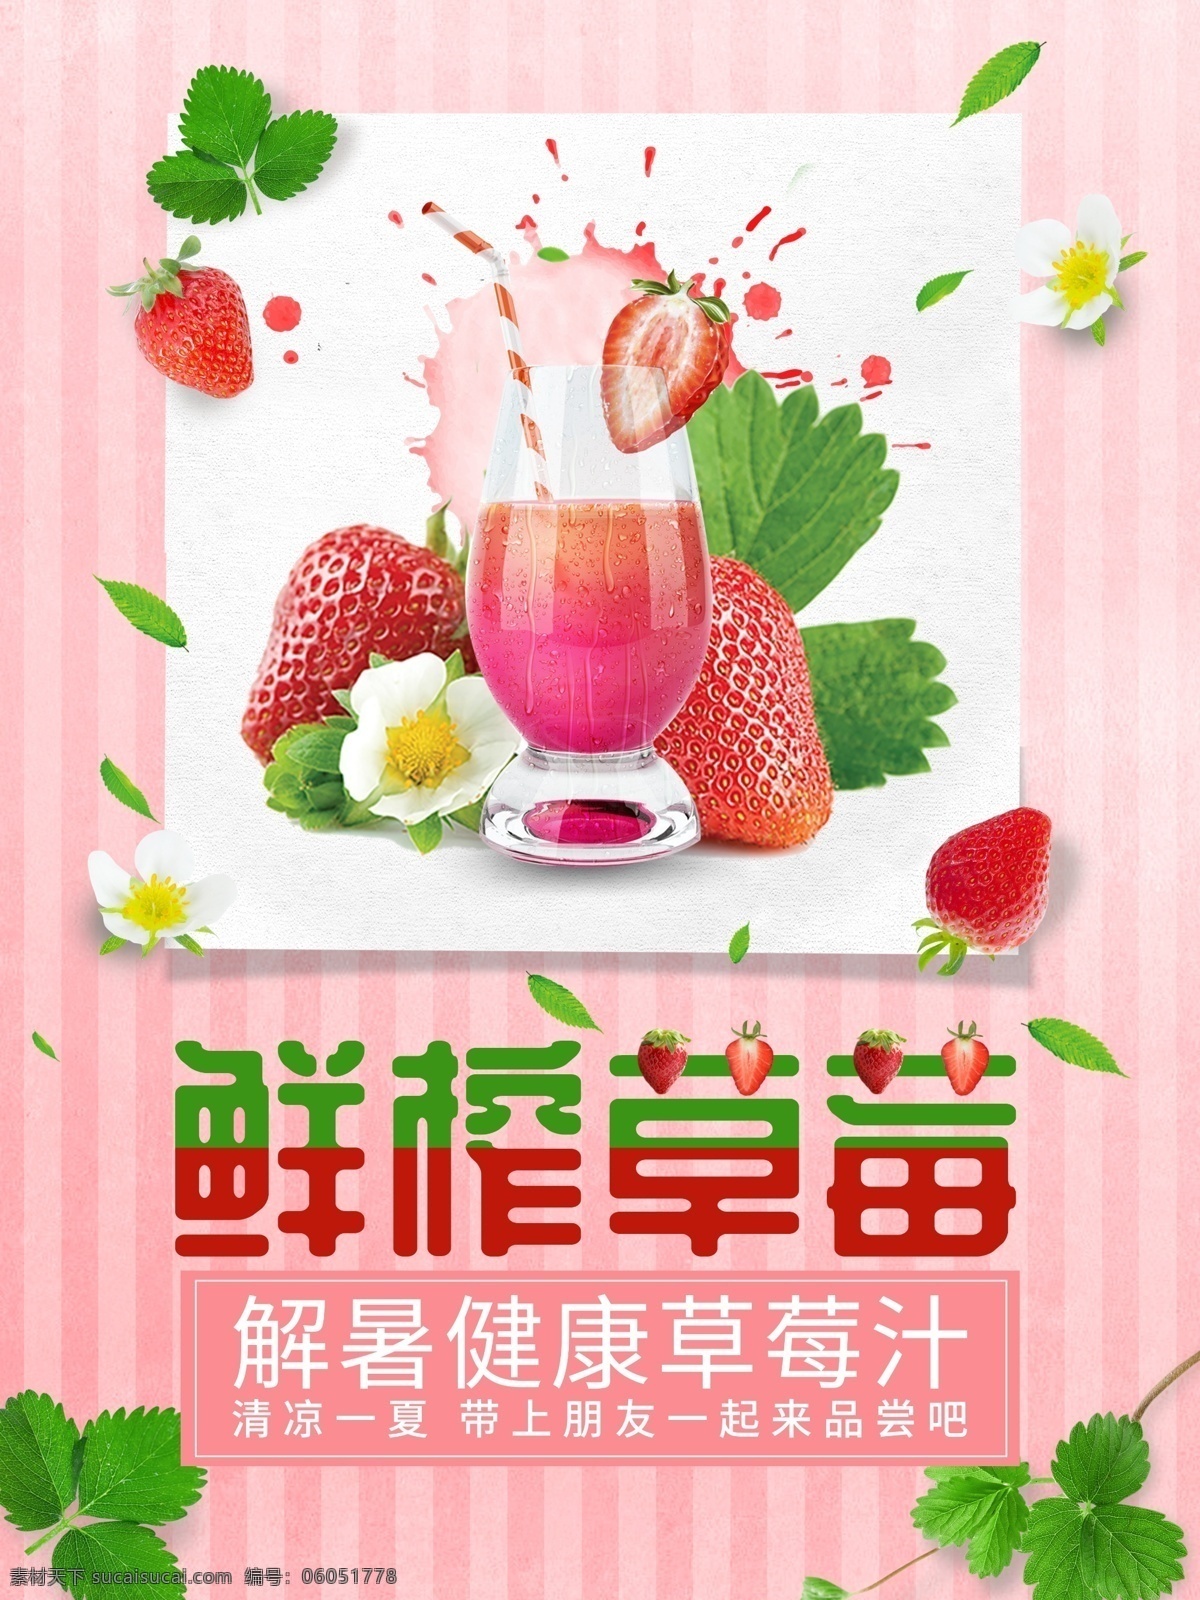 粉色 解暑 鲜榨 草莓汁 美食 海报 果汁海报 果汁 草莓 夏日海报 小清新海报 粉色海报